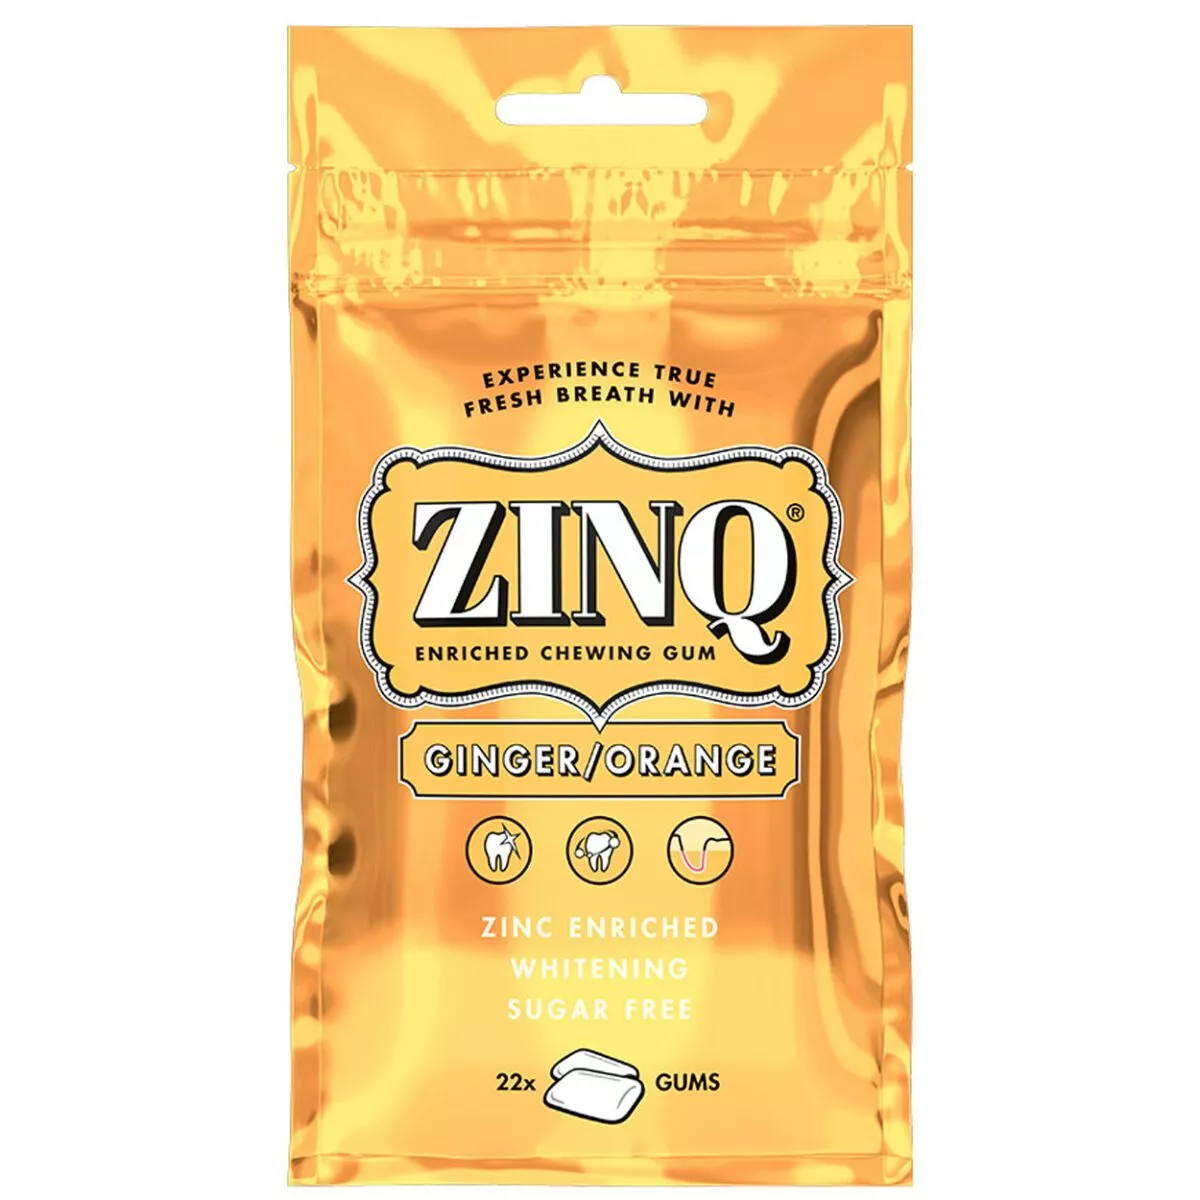 ZINQ Ginger Orange - Kaugummi / Ingwer - Orange (31,5g) *SONDERPREIS wegen kurzer Haltbarkeit* 1